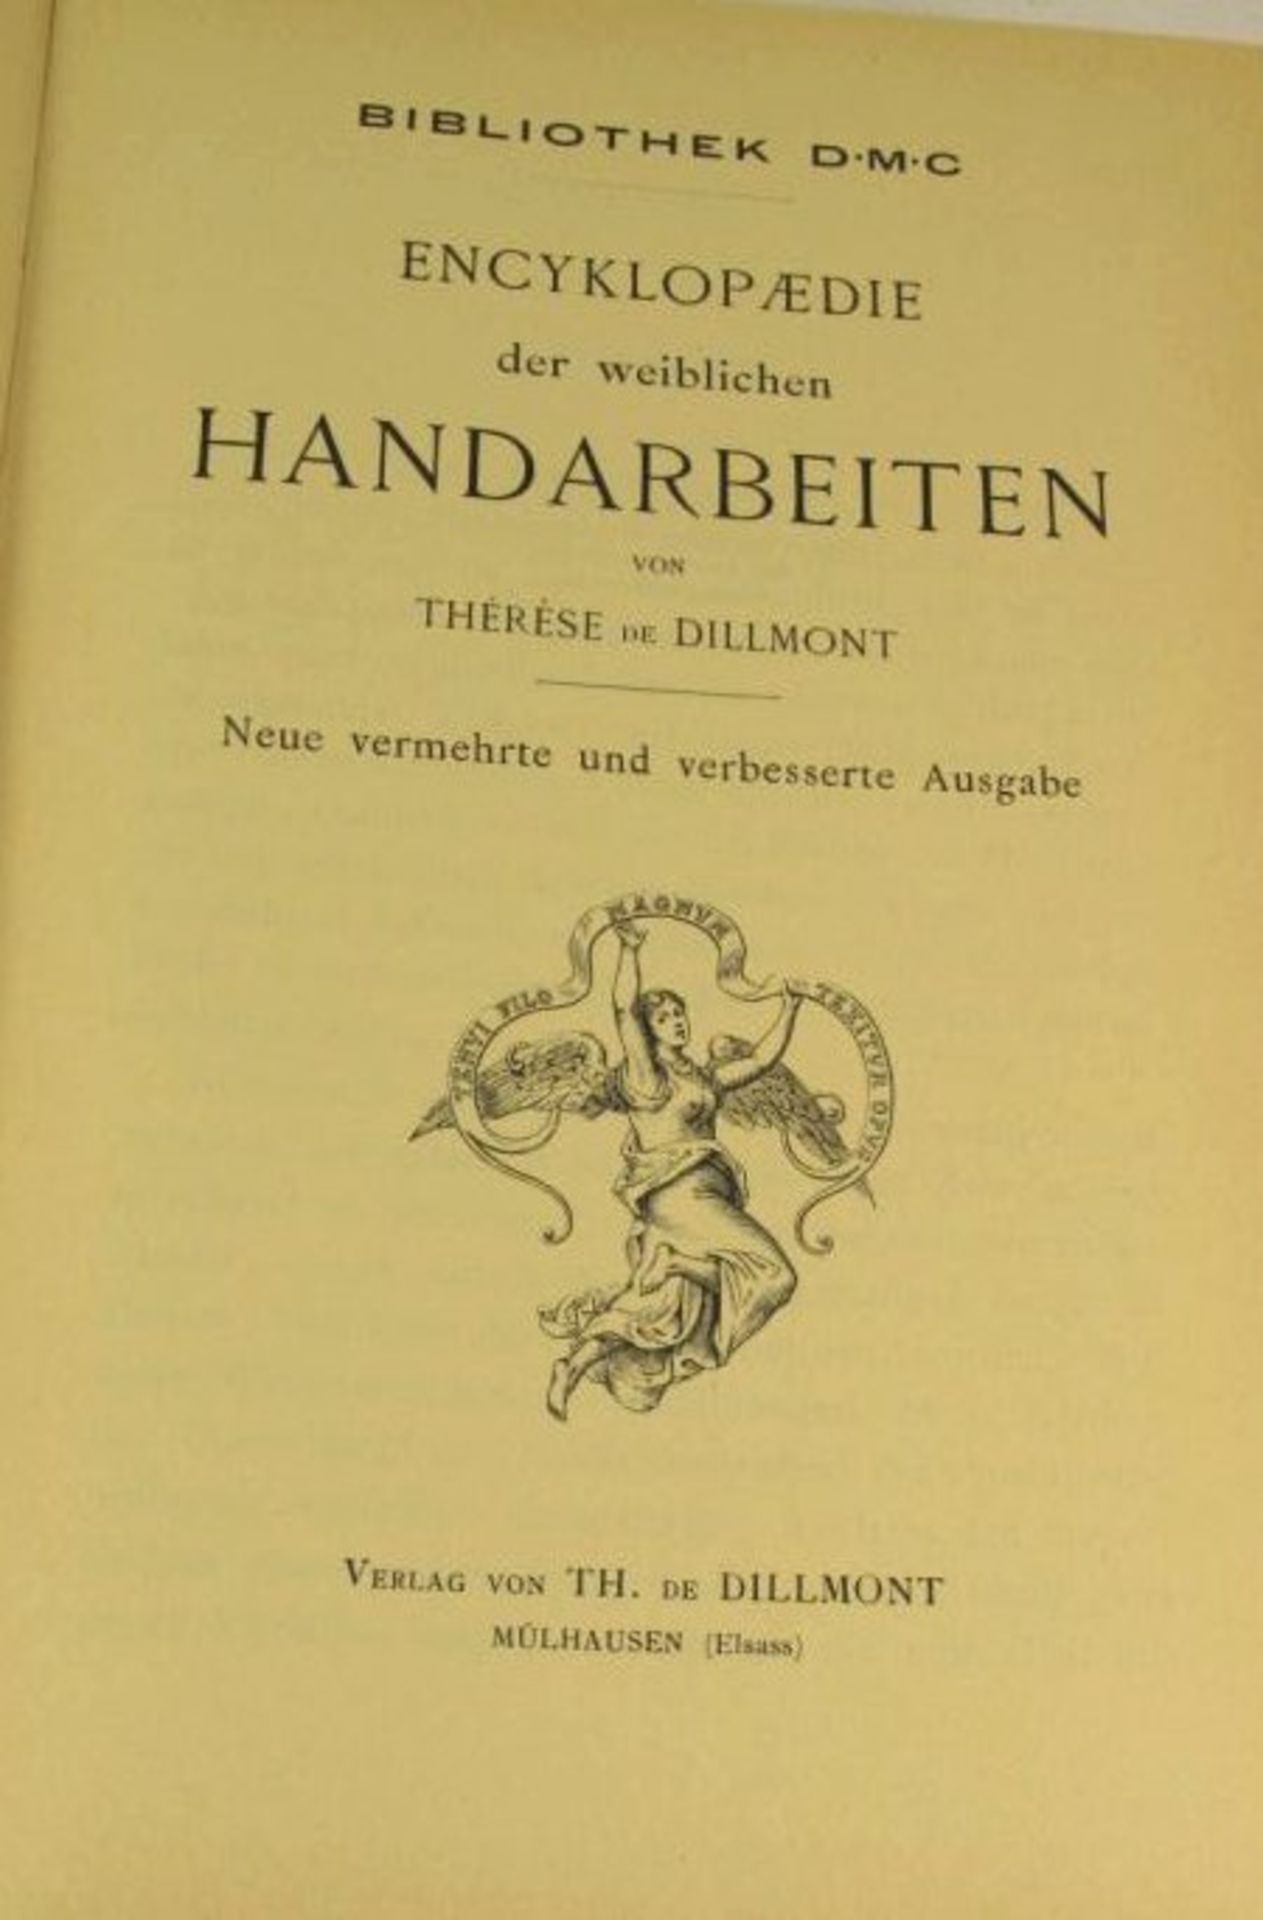 Encyklopädie der weiblichen Handarbeiten, reprint der Ausgabe von 1908, Thérése de Dillmont. - Bild 2 aus 2